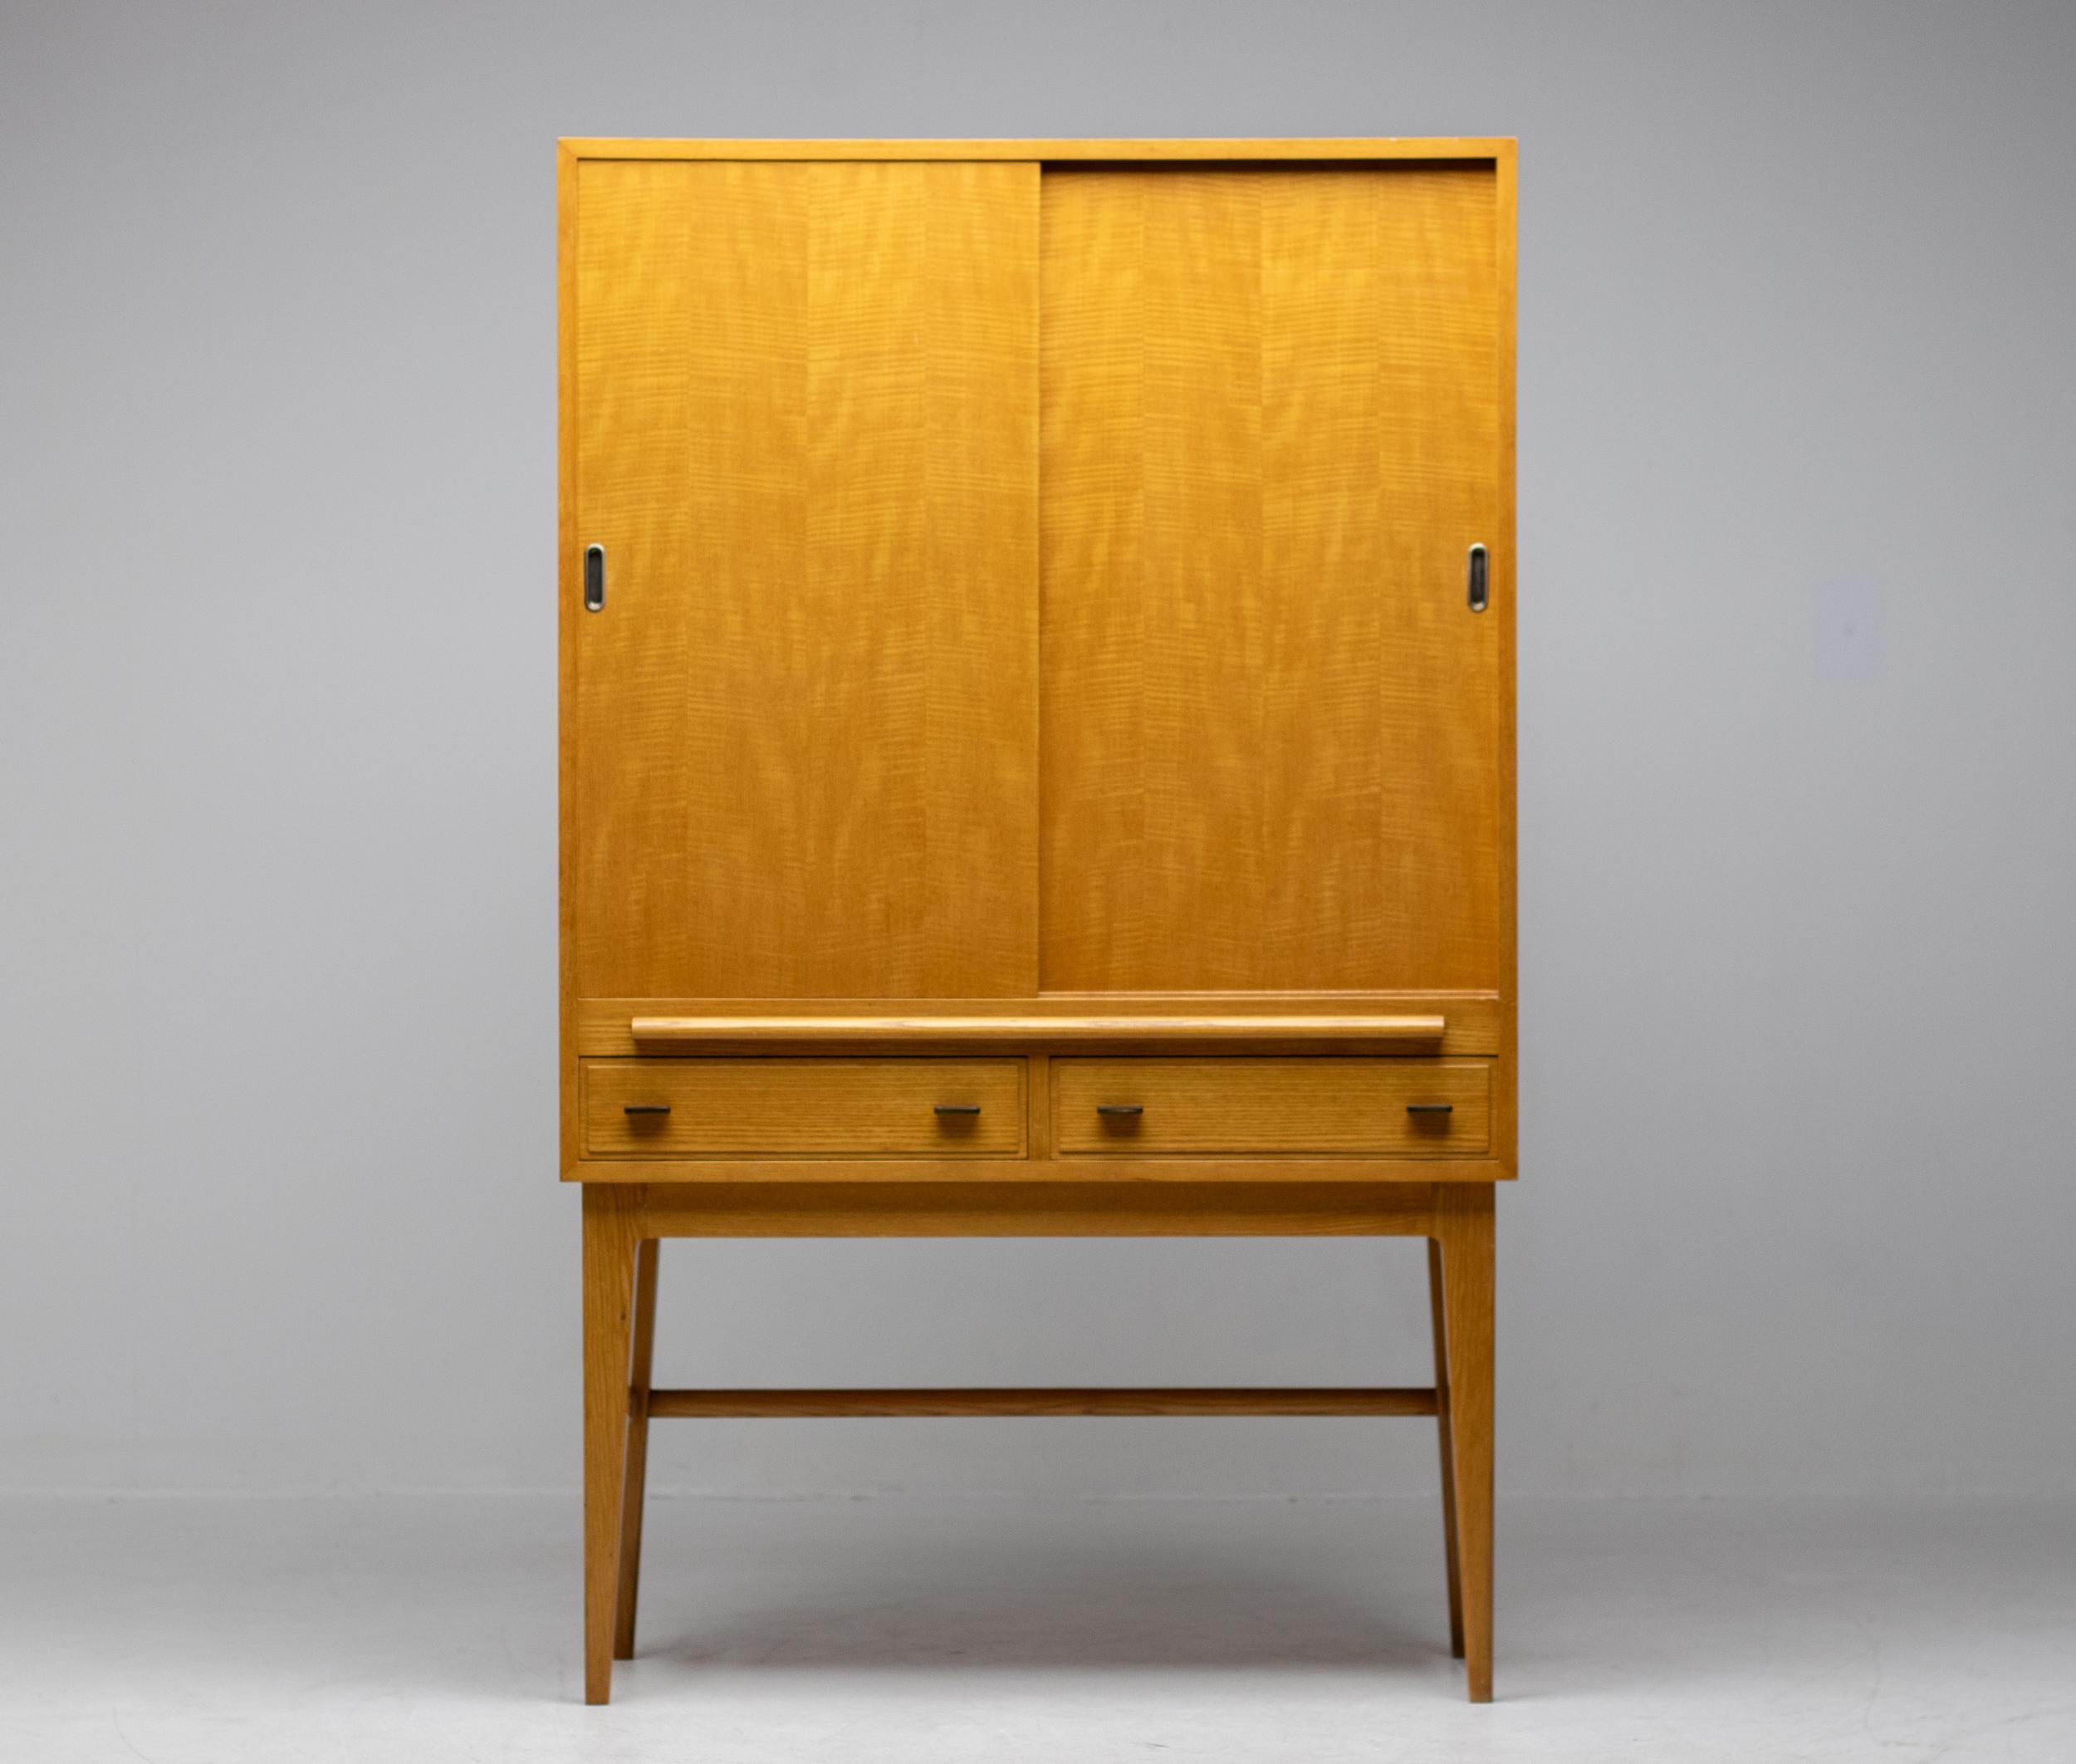 Magnifique meuble fabriqué par Pander & Zonen, célèbre fabricant néerlandais de meubles haut de gamme dans la première moitié du 20e siècle. Pander a travaillé avec d'importants architectes d'intérieur et architectes comme Hendrik Wouda.
La plupart